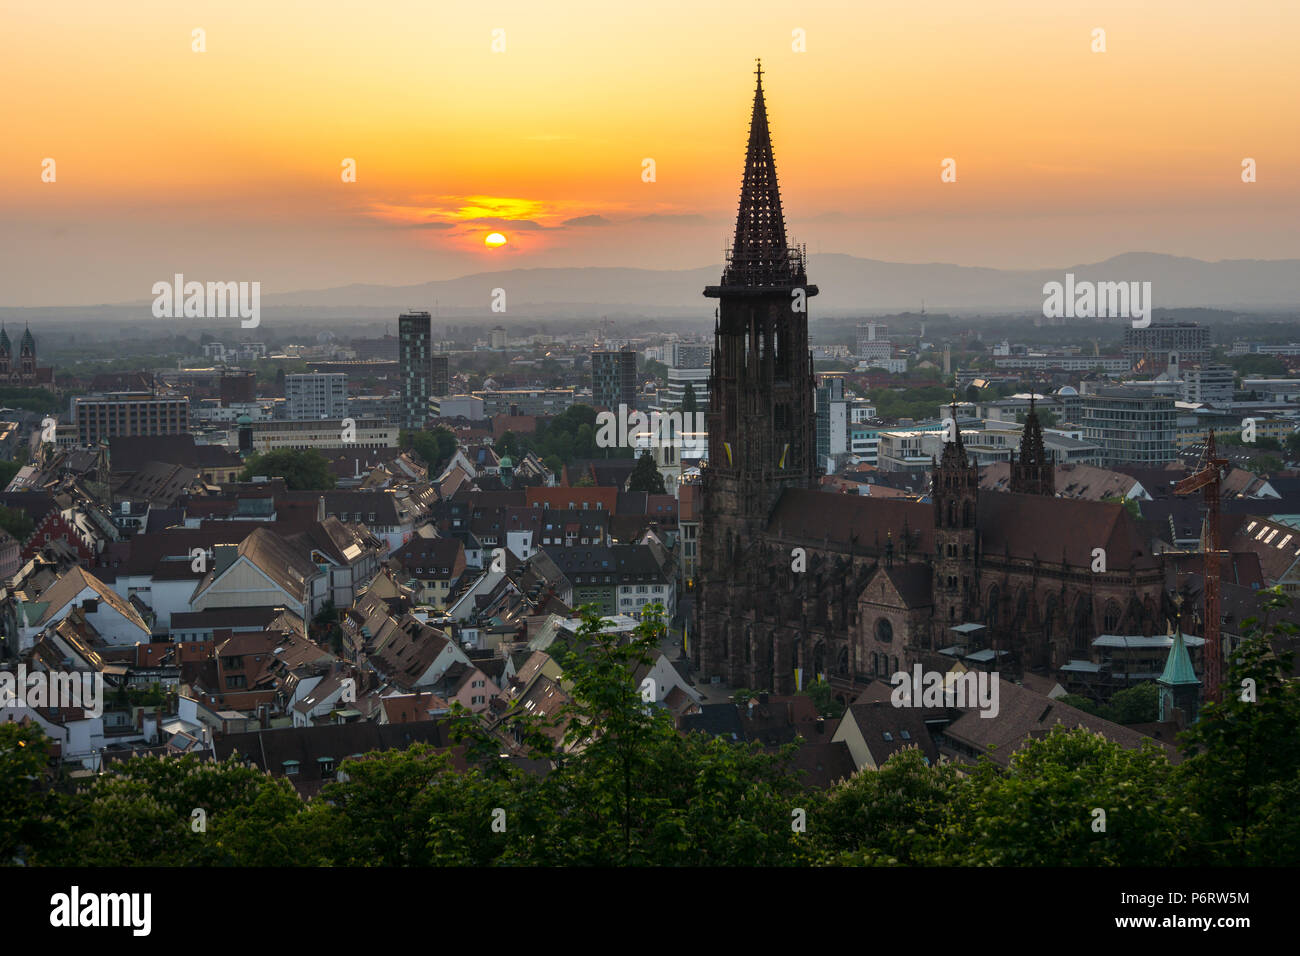 Germania, antica minster e case di Freiburg im Breisgau in arancione la luce del tramonto Foto Stock